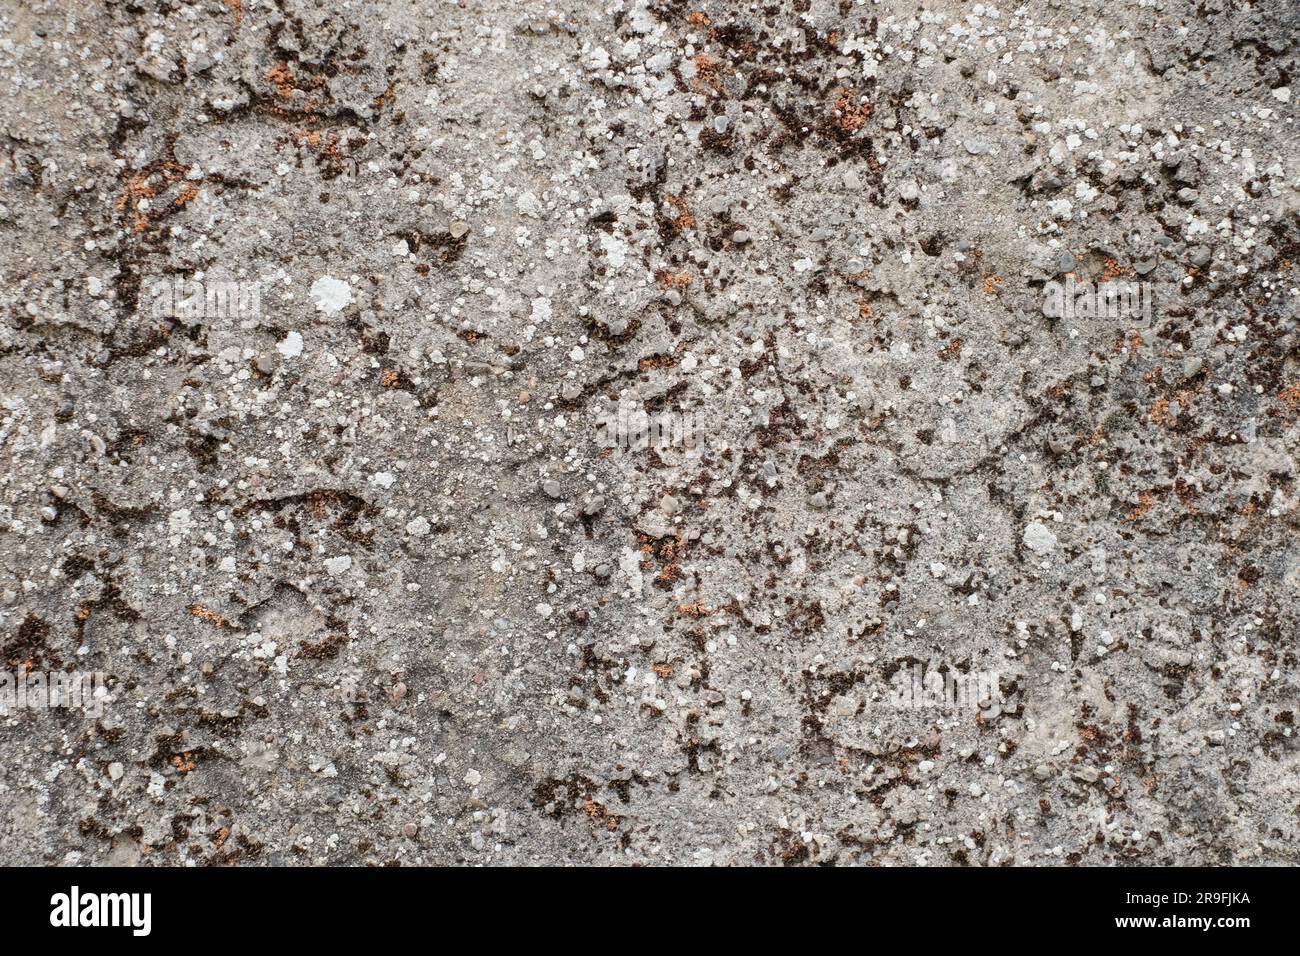 Immergiti nel capolavoro della natura: Un'accattivante miscela di rocce con affascinanti texture di sfondo. Foto Stock